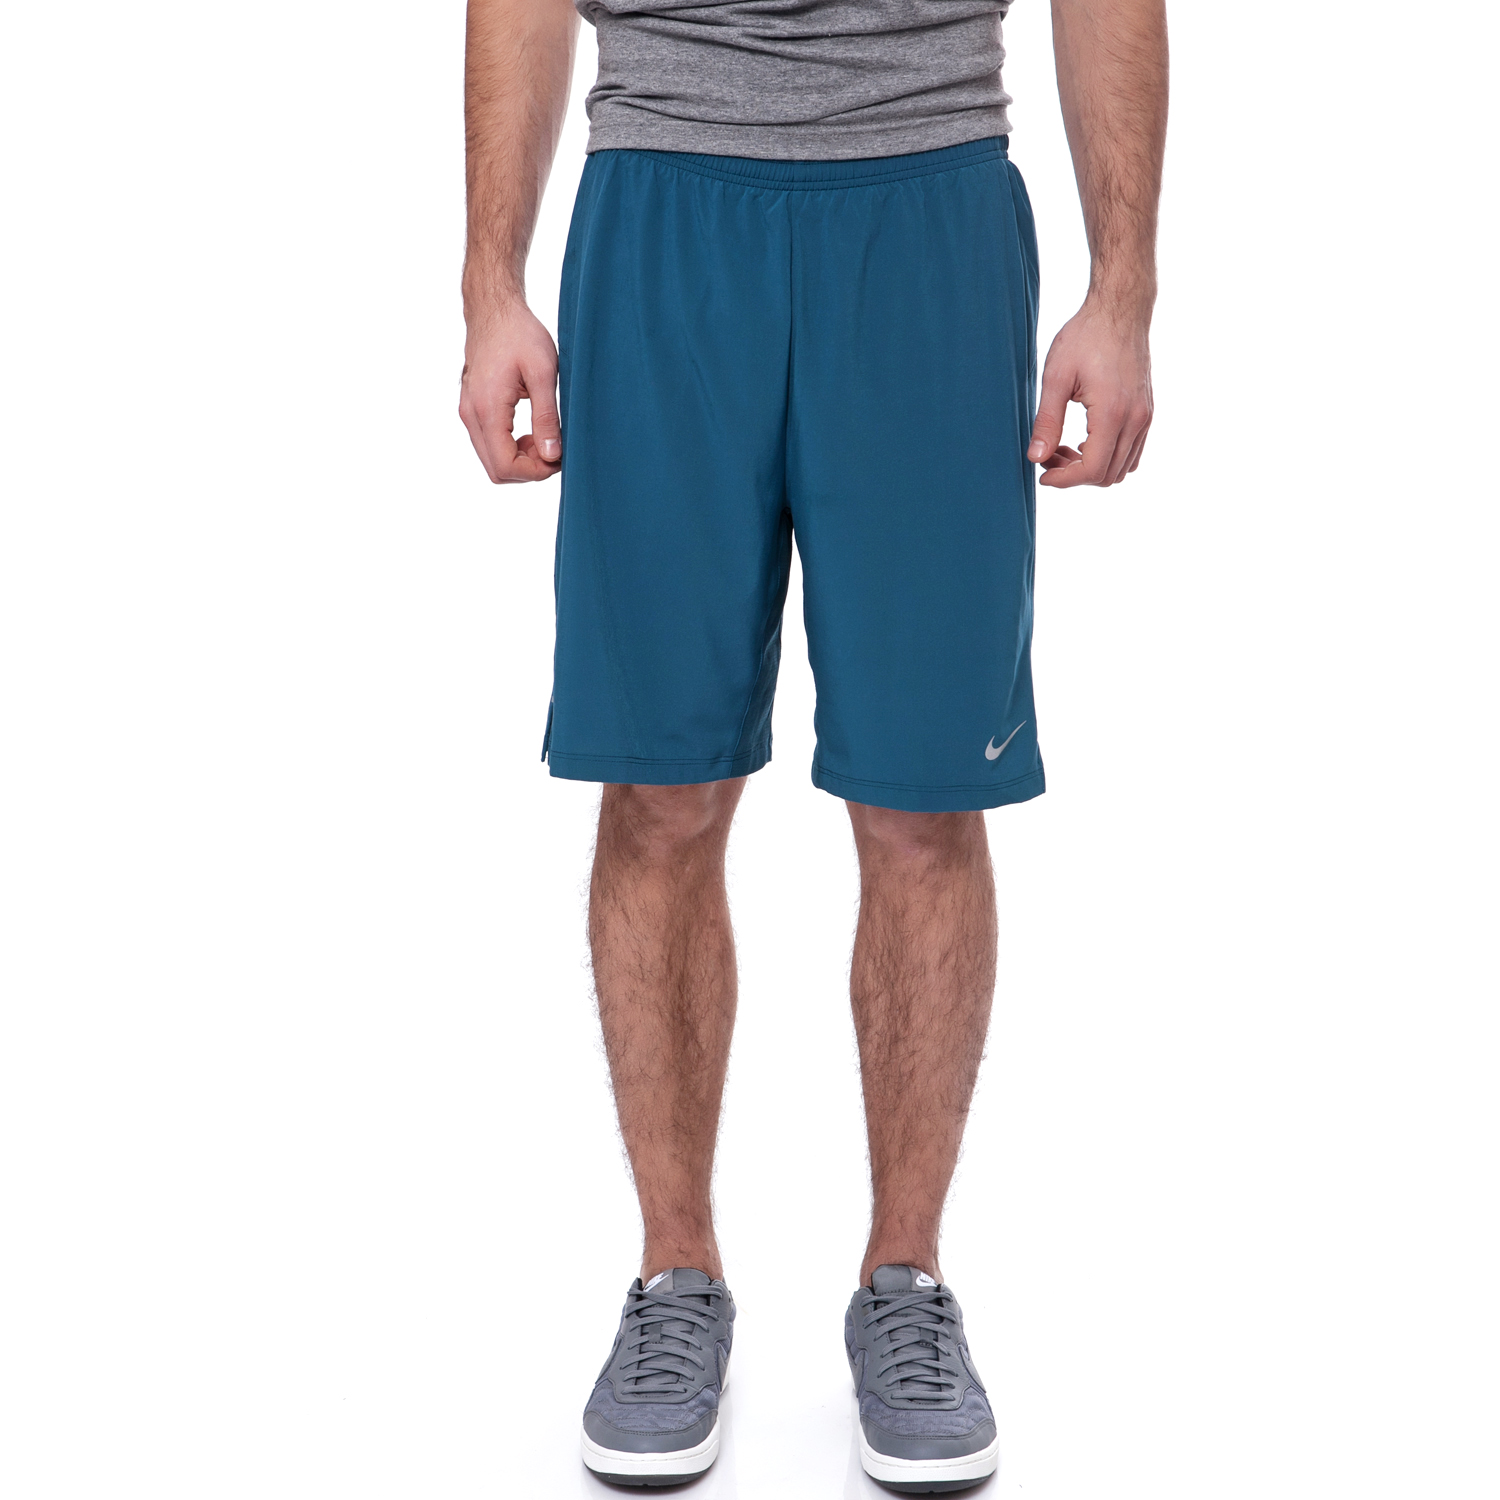 NIKE - Ανδρικό σορτς Nike 9" PHENOM μπλε Ανδρικά/Ρούχα/Σορτς-Βερμούδες/Αθλητικά